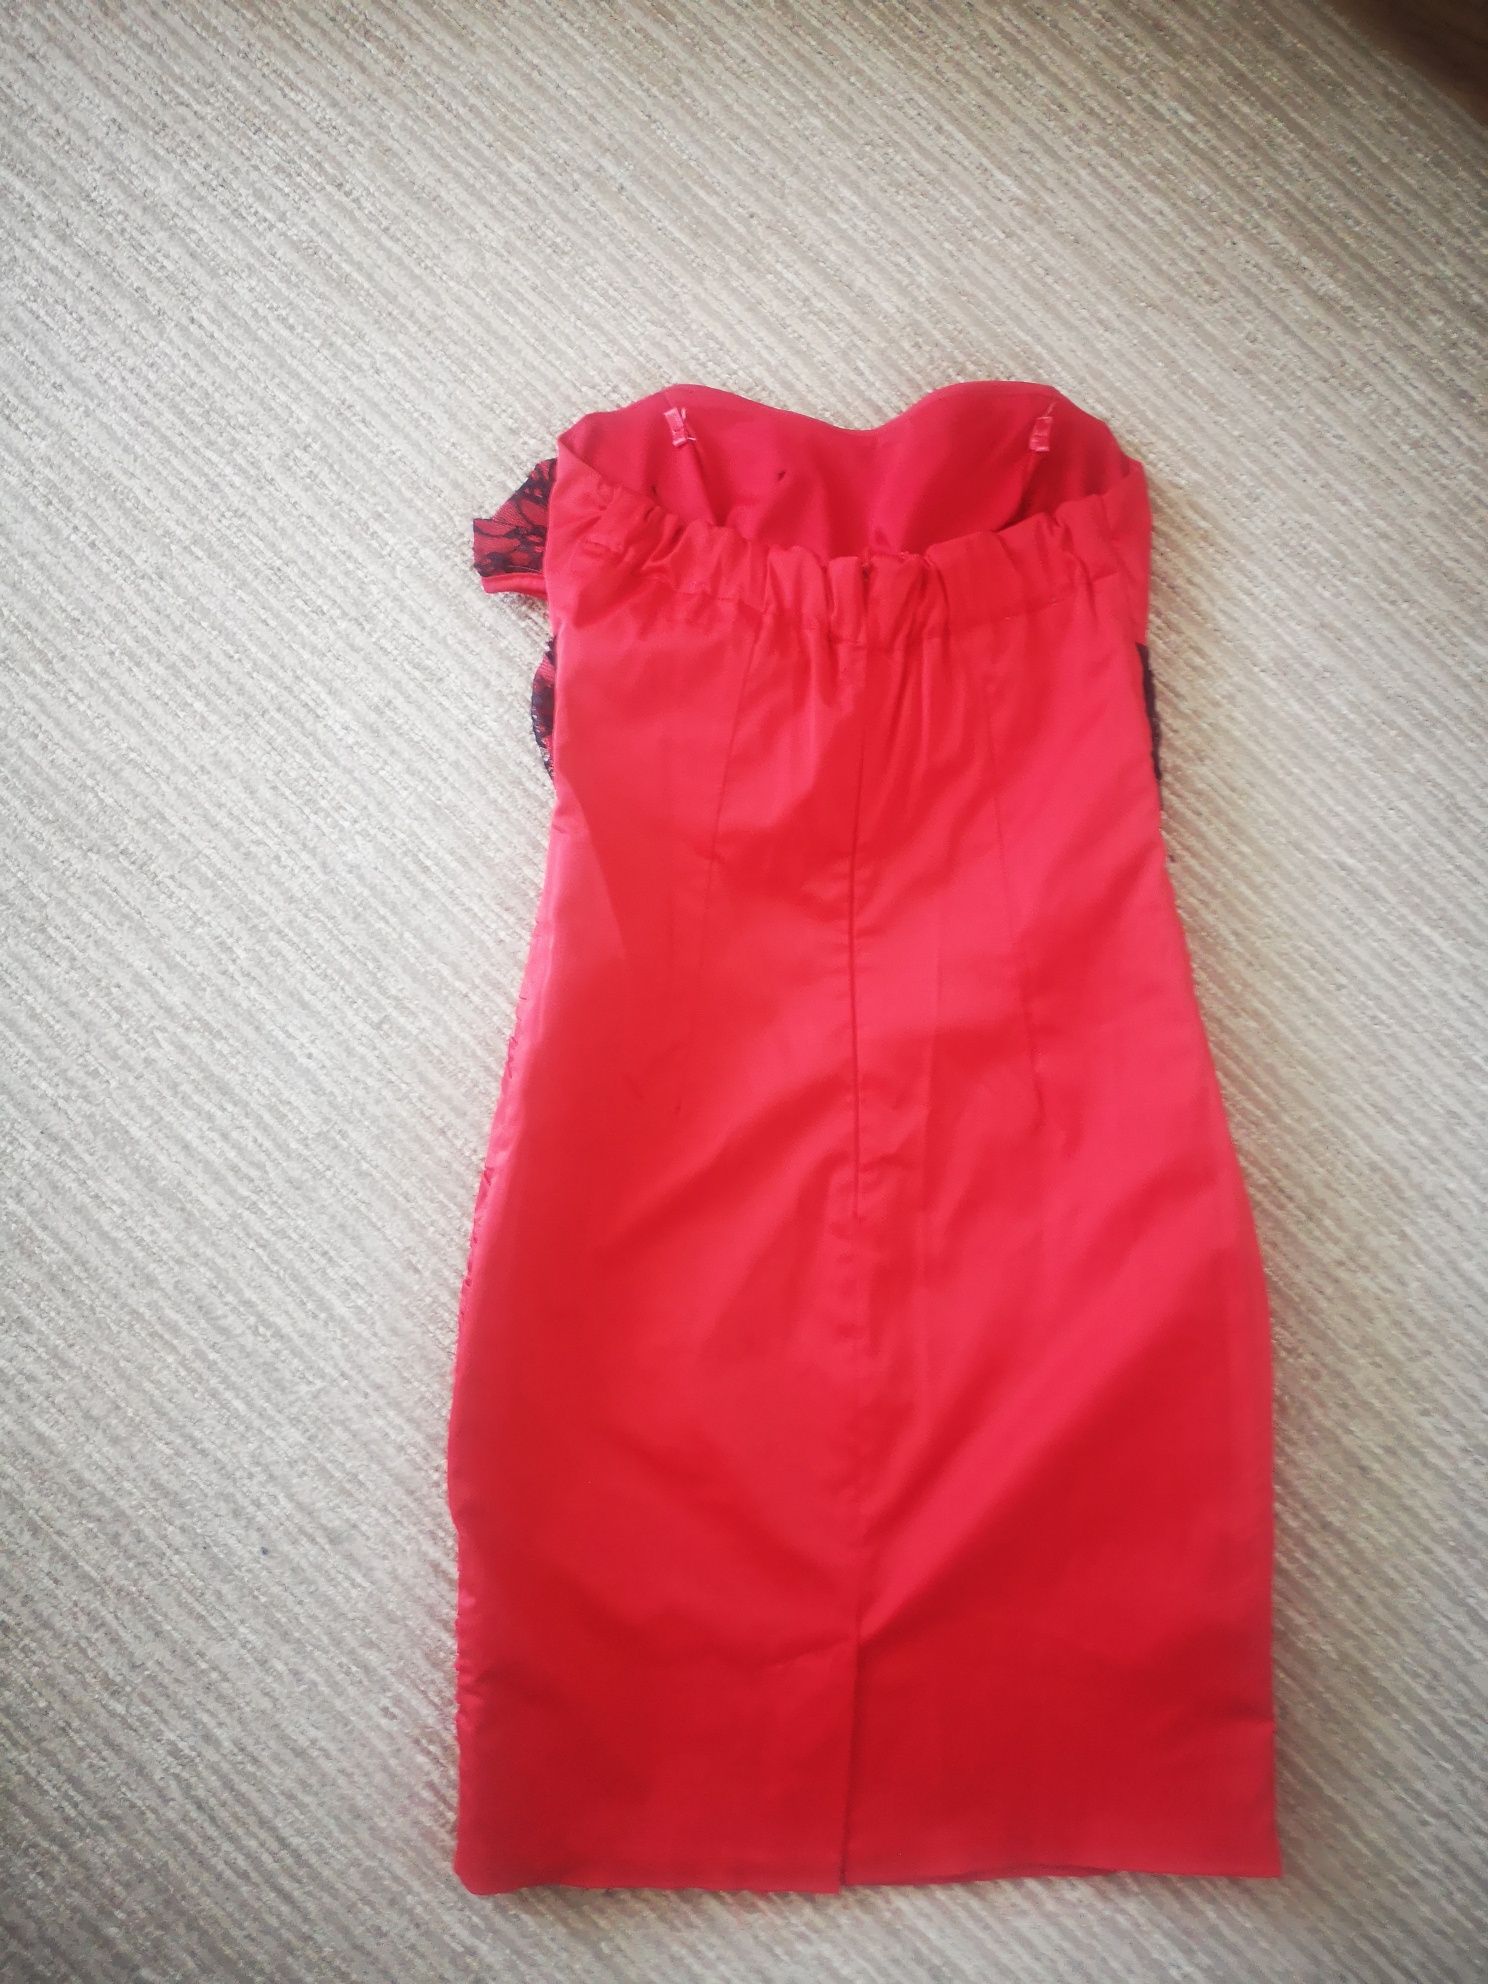 Червена дамска рокля, 36 размер